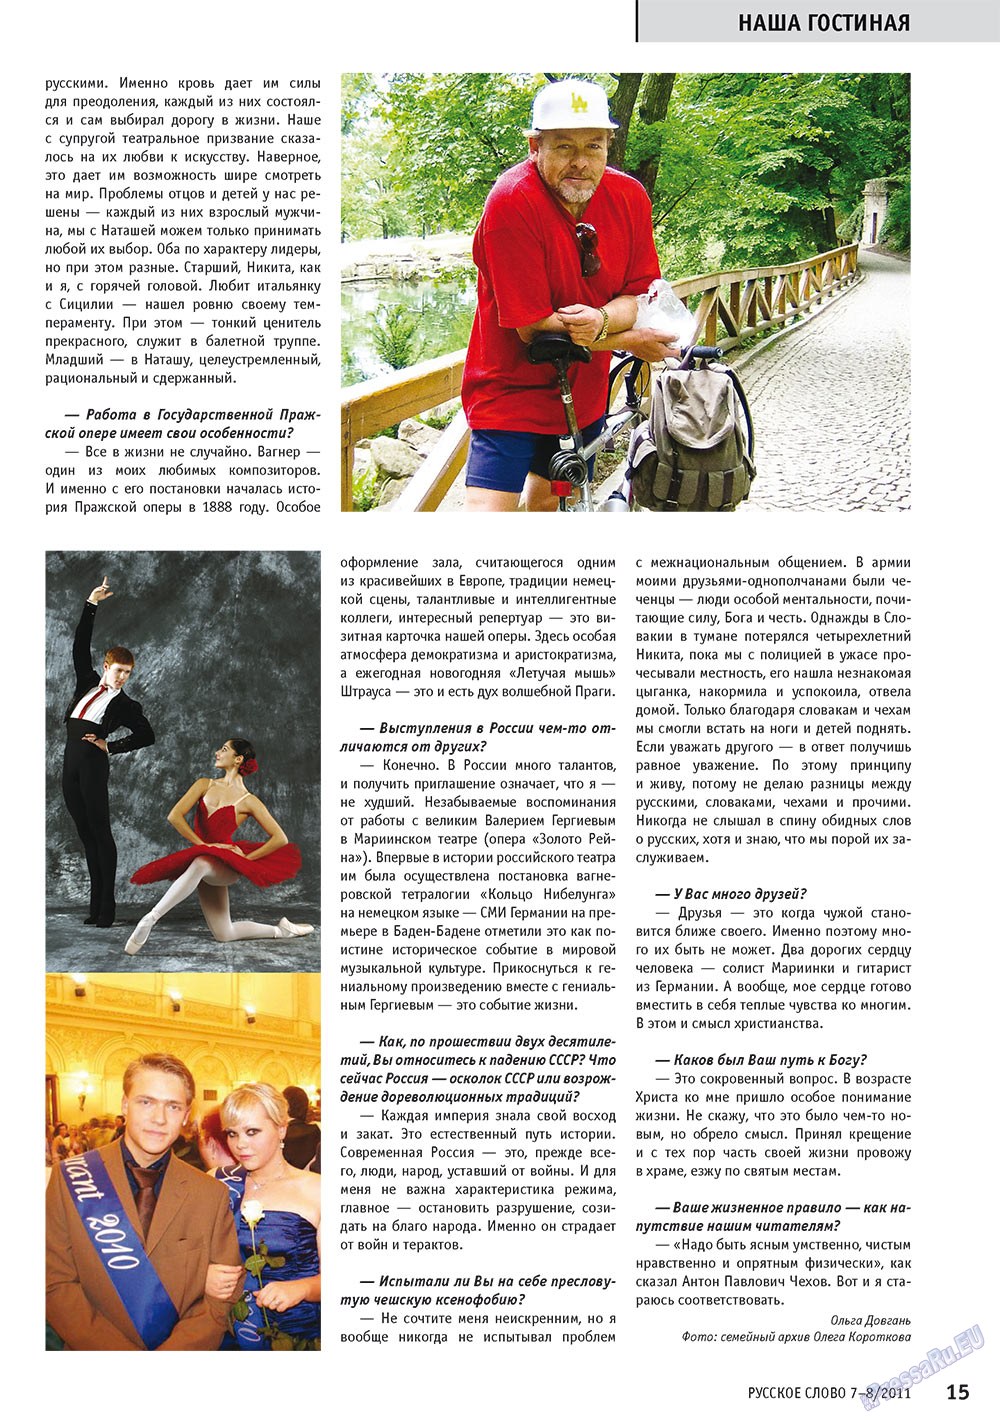 Русское слово, журнал. 2011 №7 стр.17